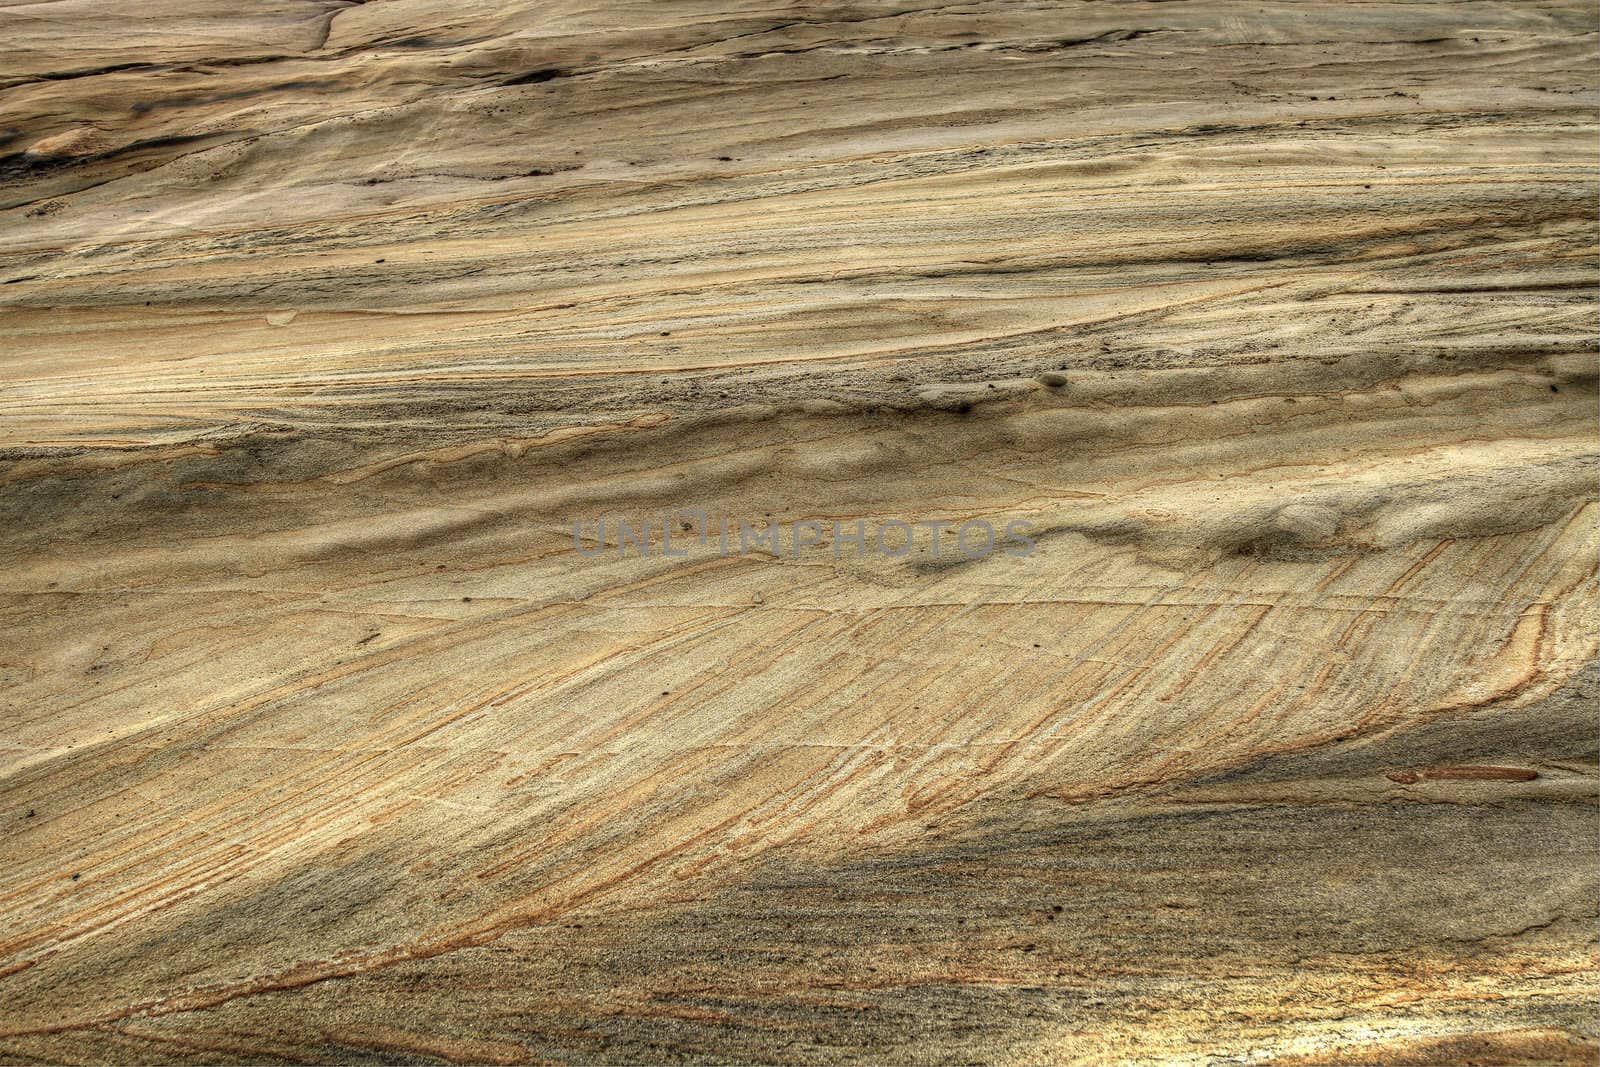 Sandstone Rock Texture by Davidgn